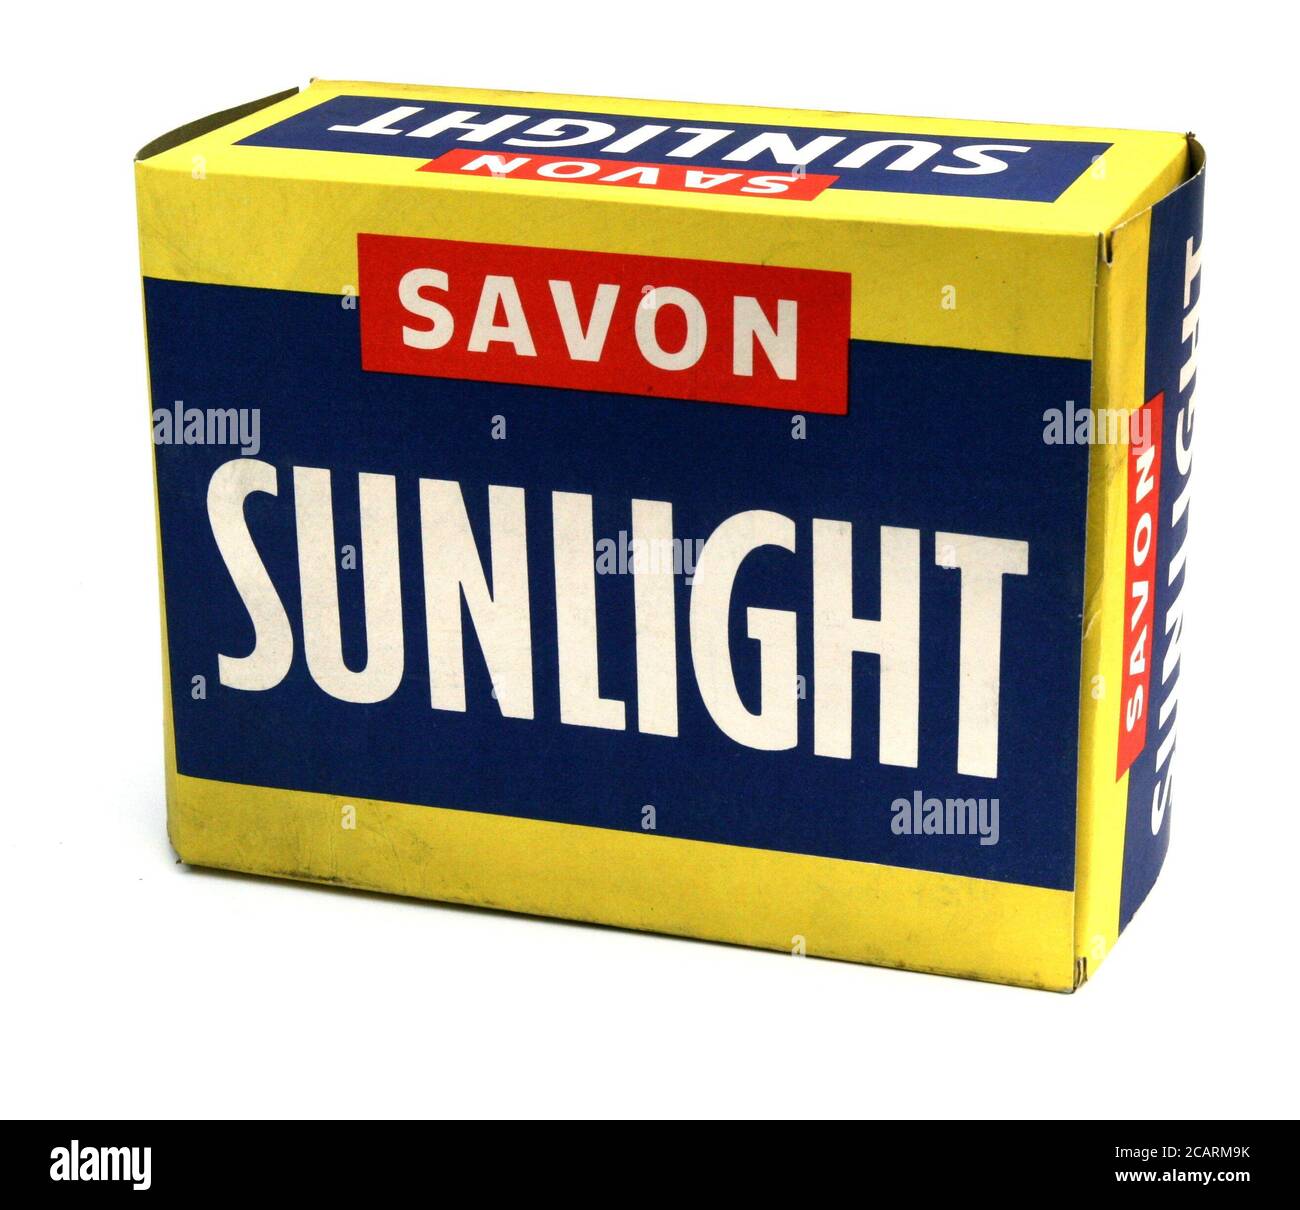 Paquet de savon luce del sole vers 1960 Foto Stock